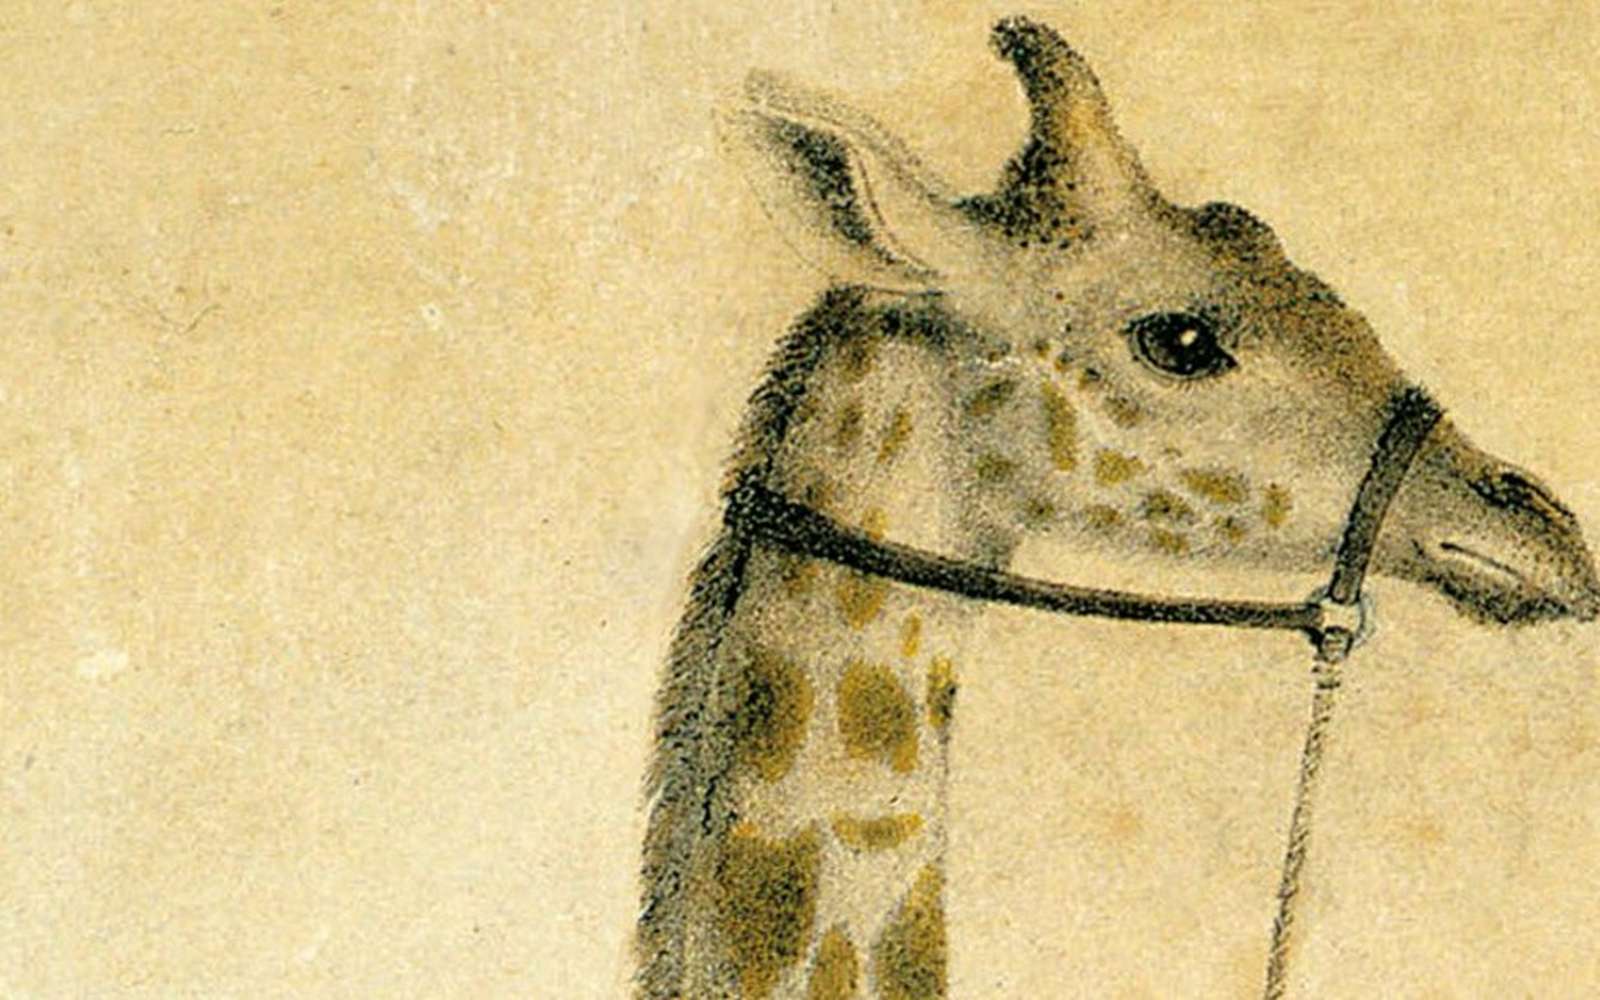 Zarafa la girafe est à l'honneur dans notre dernier podcast